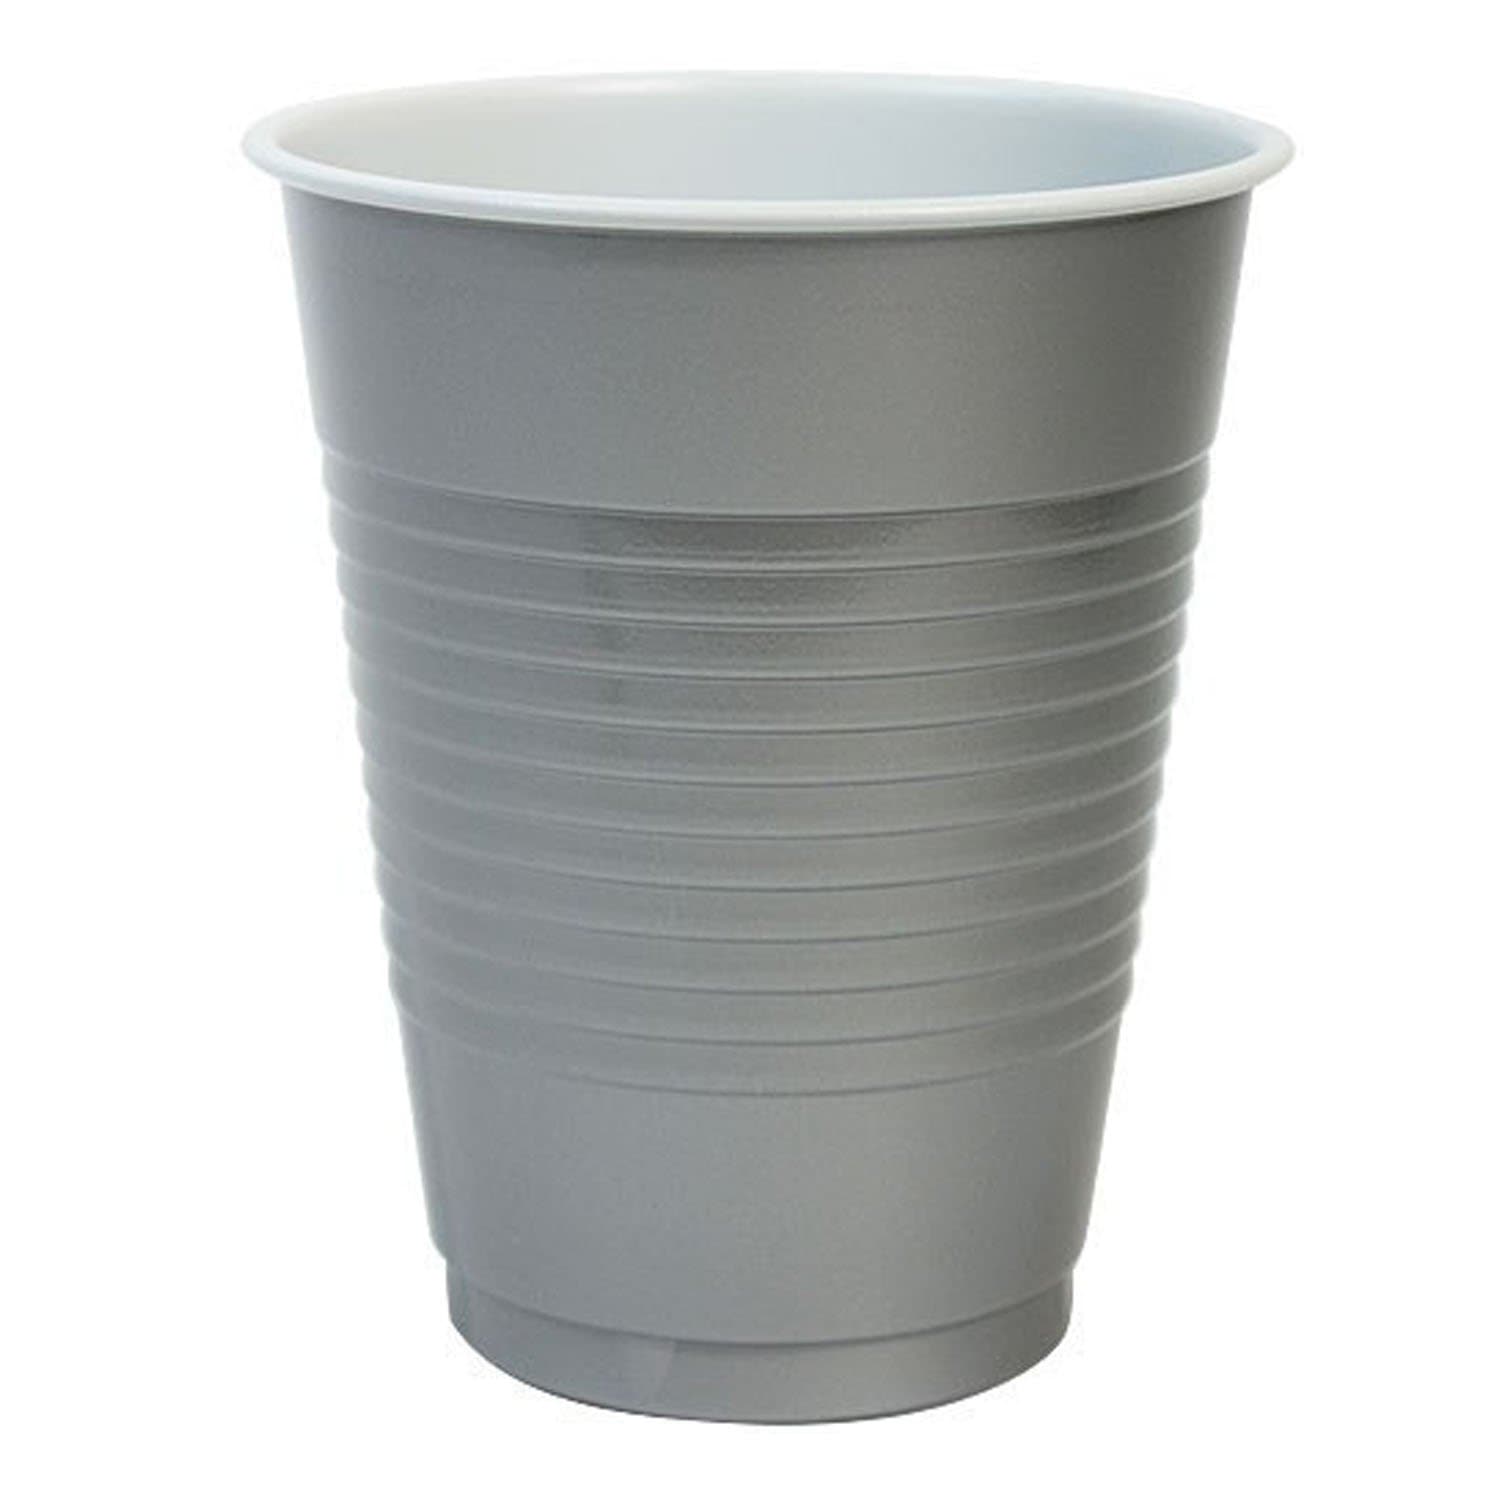 http://onlyonestopshop.com/cdn/shop/products/Hanna-K.-Signature-Plastic-Cups-Silver-18-oz-Hanna-K-Signature-1603926079.jpg?v=1603926080